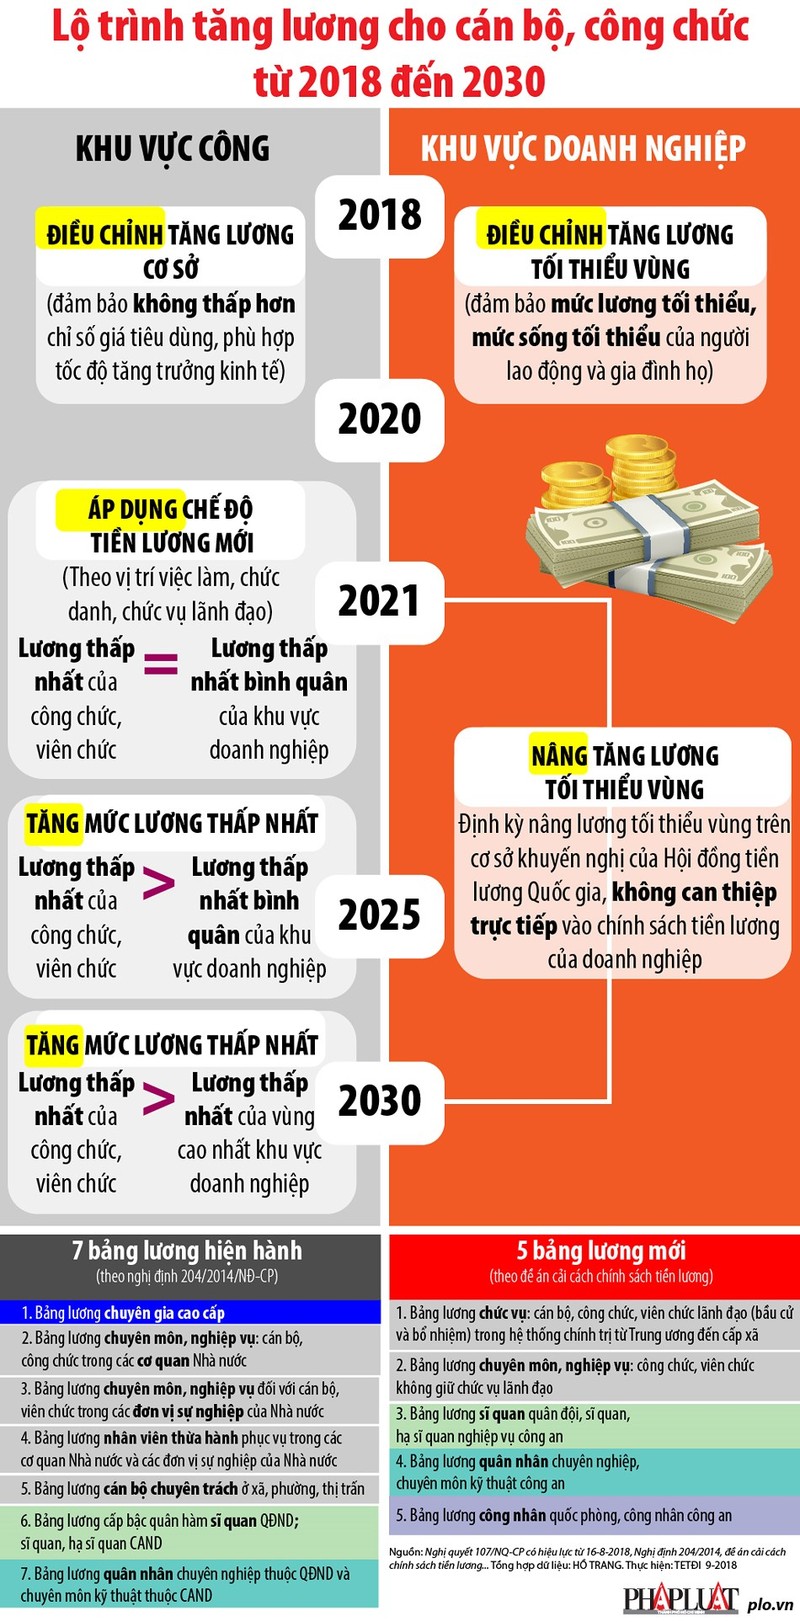 Lo trinh tang luong cho can bo, cong chuc tu 2018 den 2030